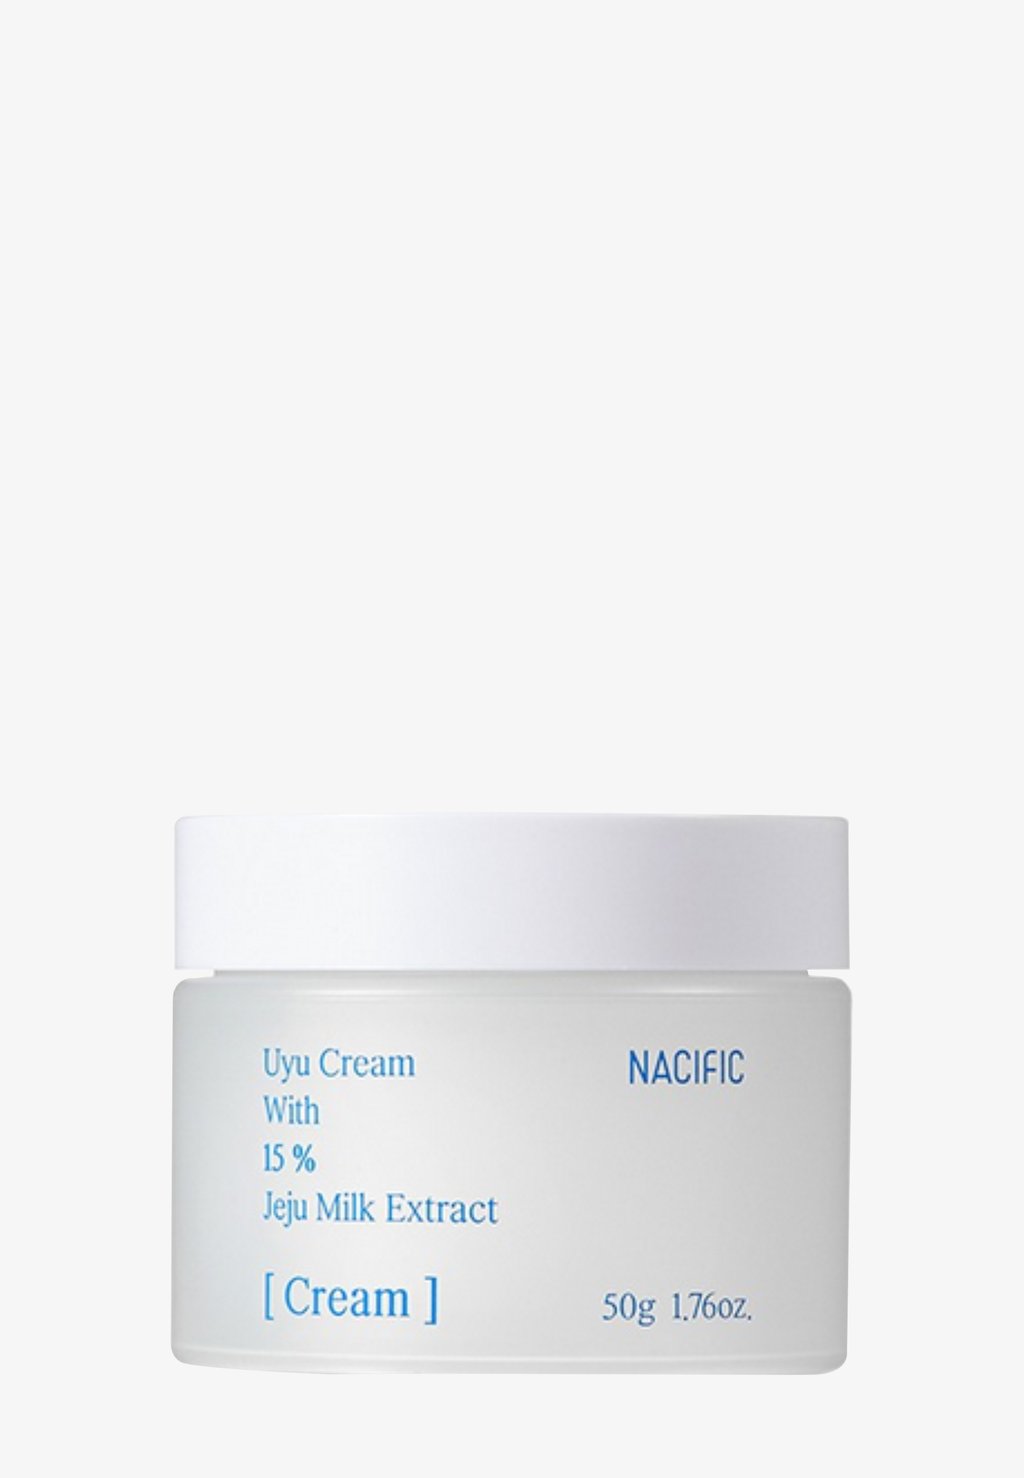 Дневной крем Uyu Cream NACIFIC